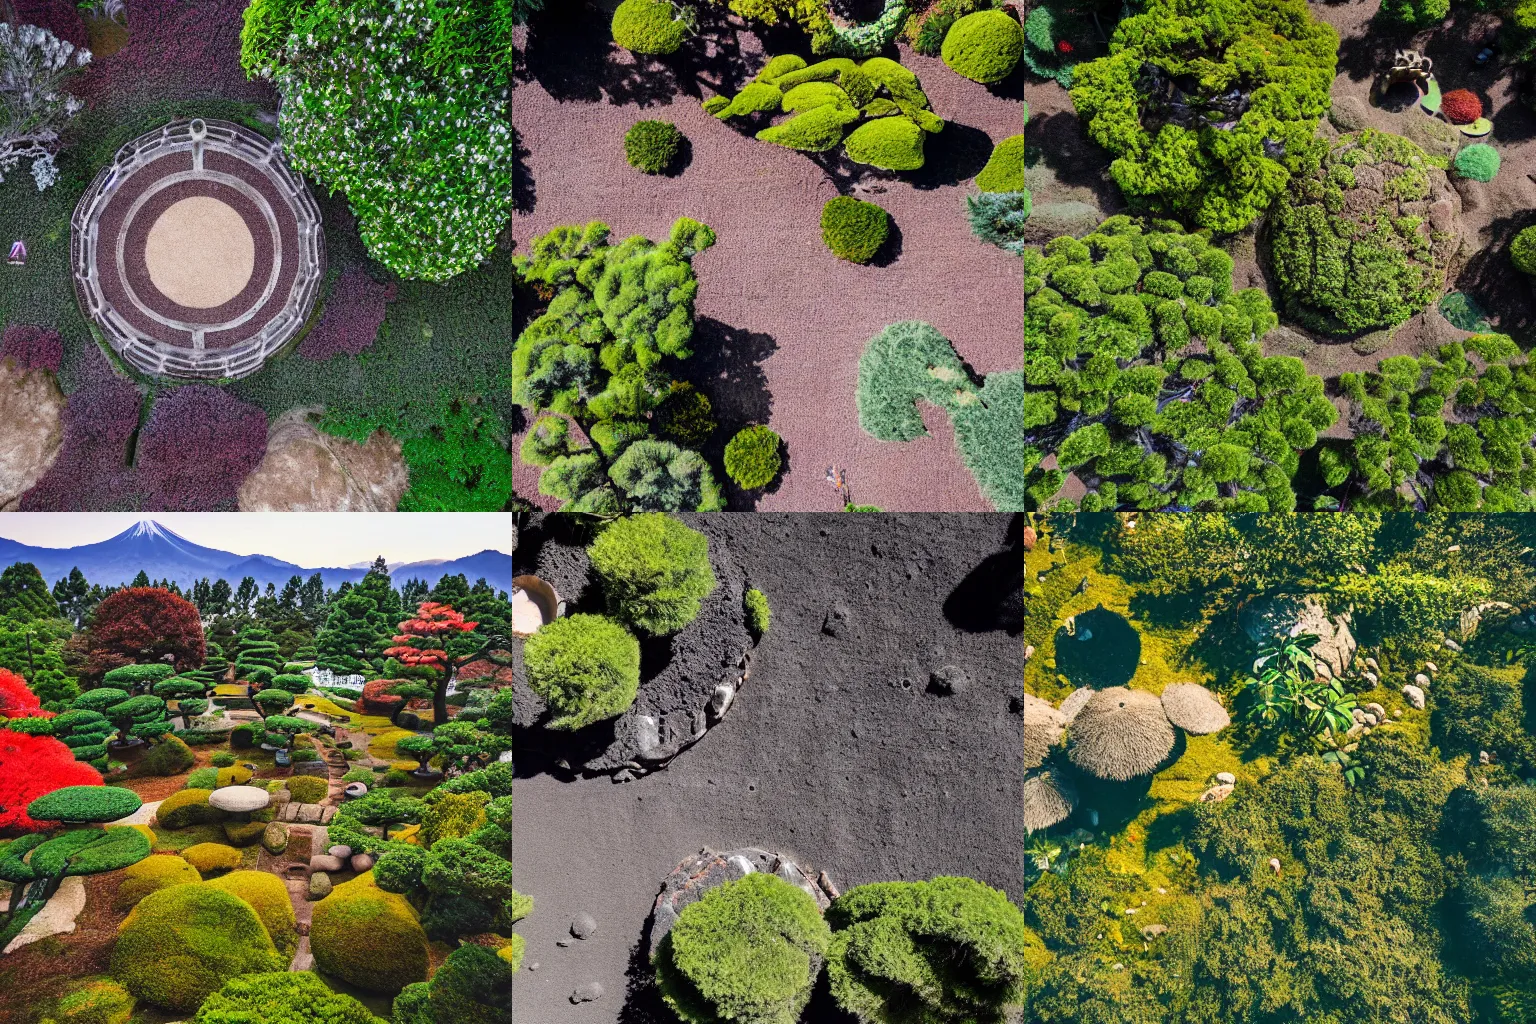 Prompt: japanese tea garden in middle of lunar landscape, drone shot